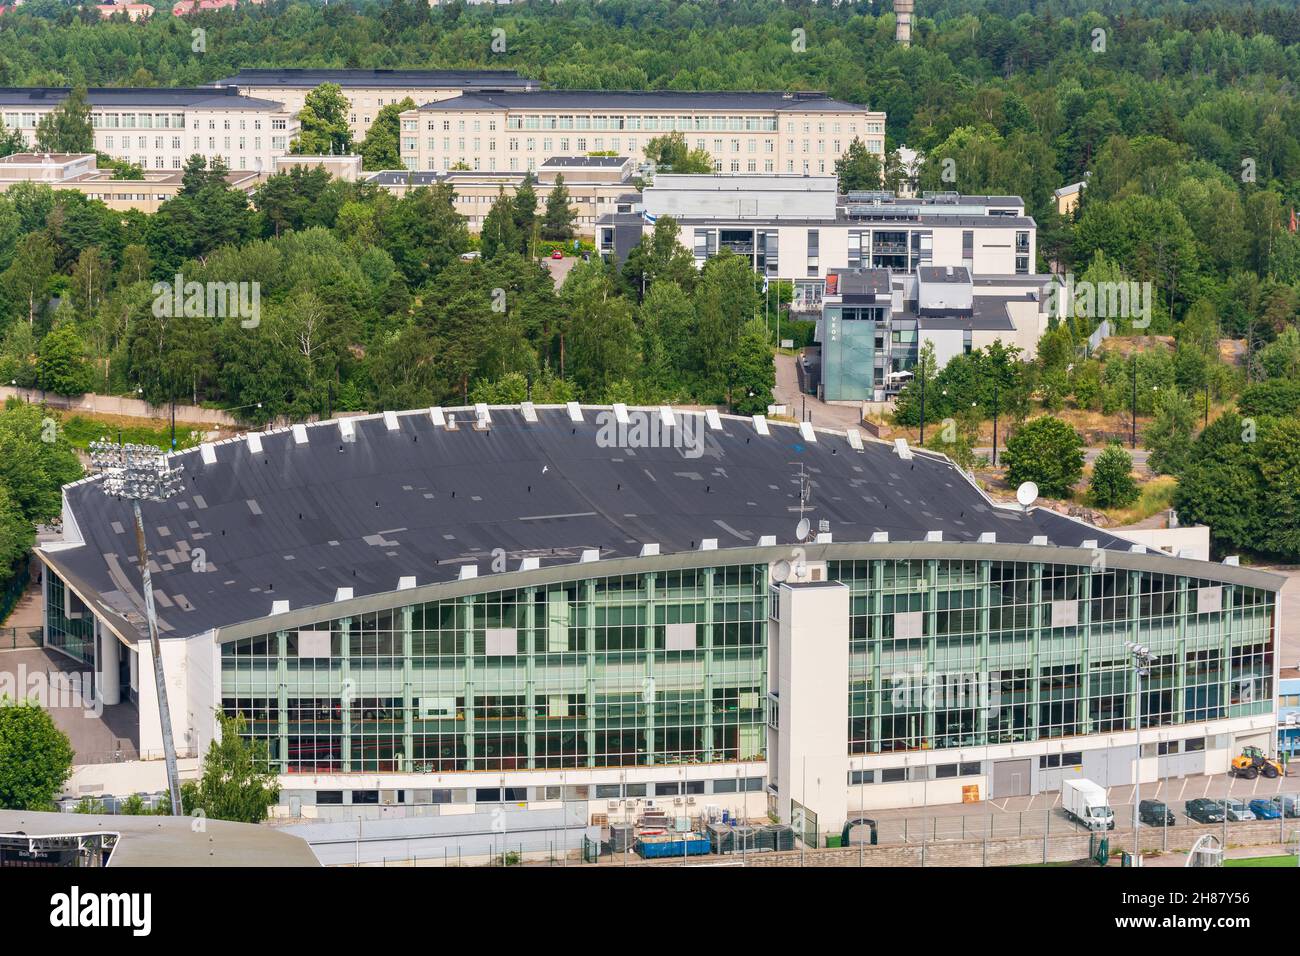 Helsingin jäähalli patinoire intérieure dans la rue Nordenskiöldinkatu vue depuis la Tour du stade olympique d'Helsinki en Finlande Banque D'Images